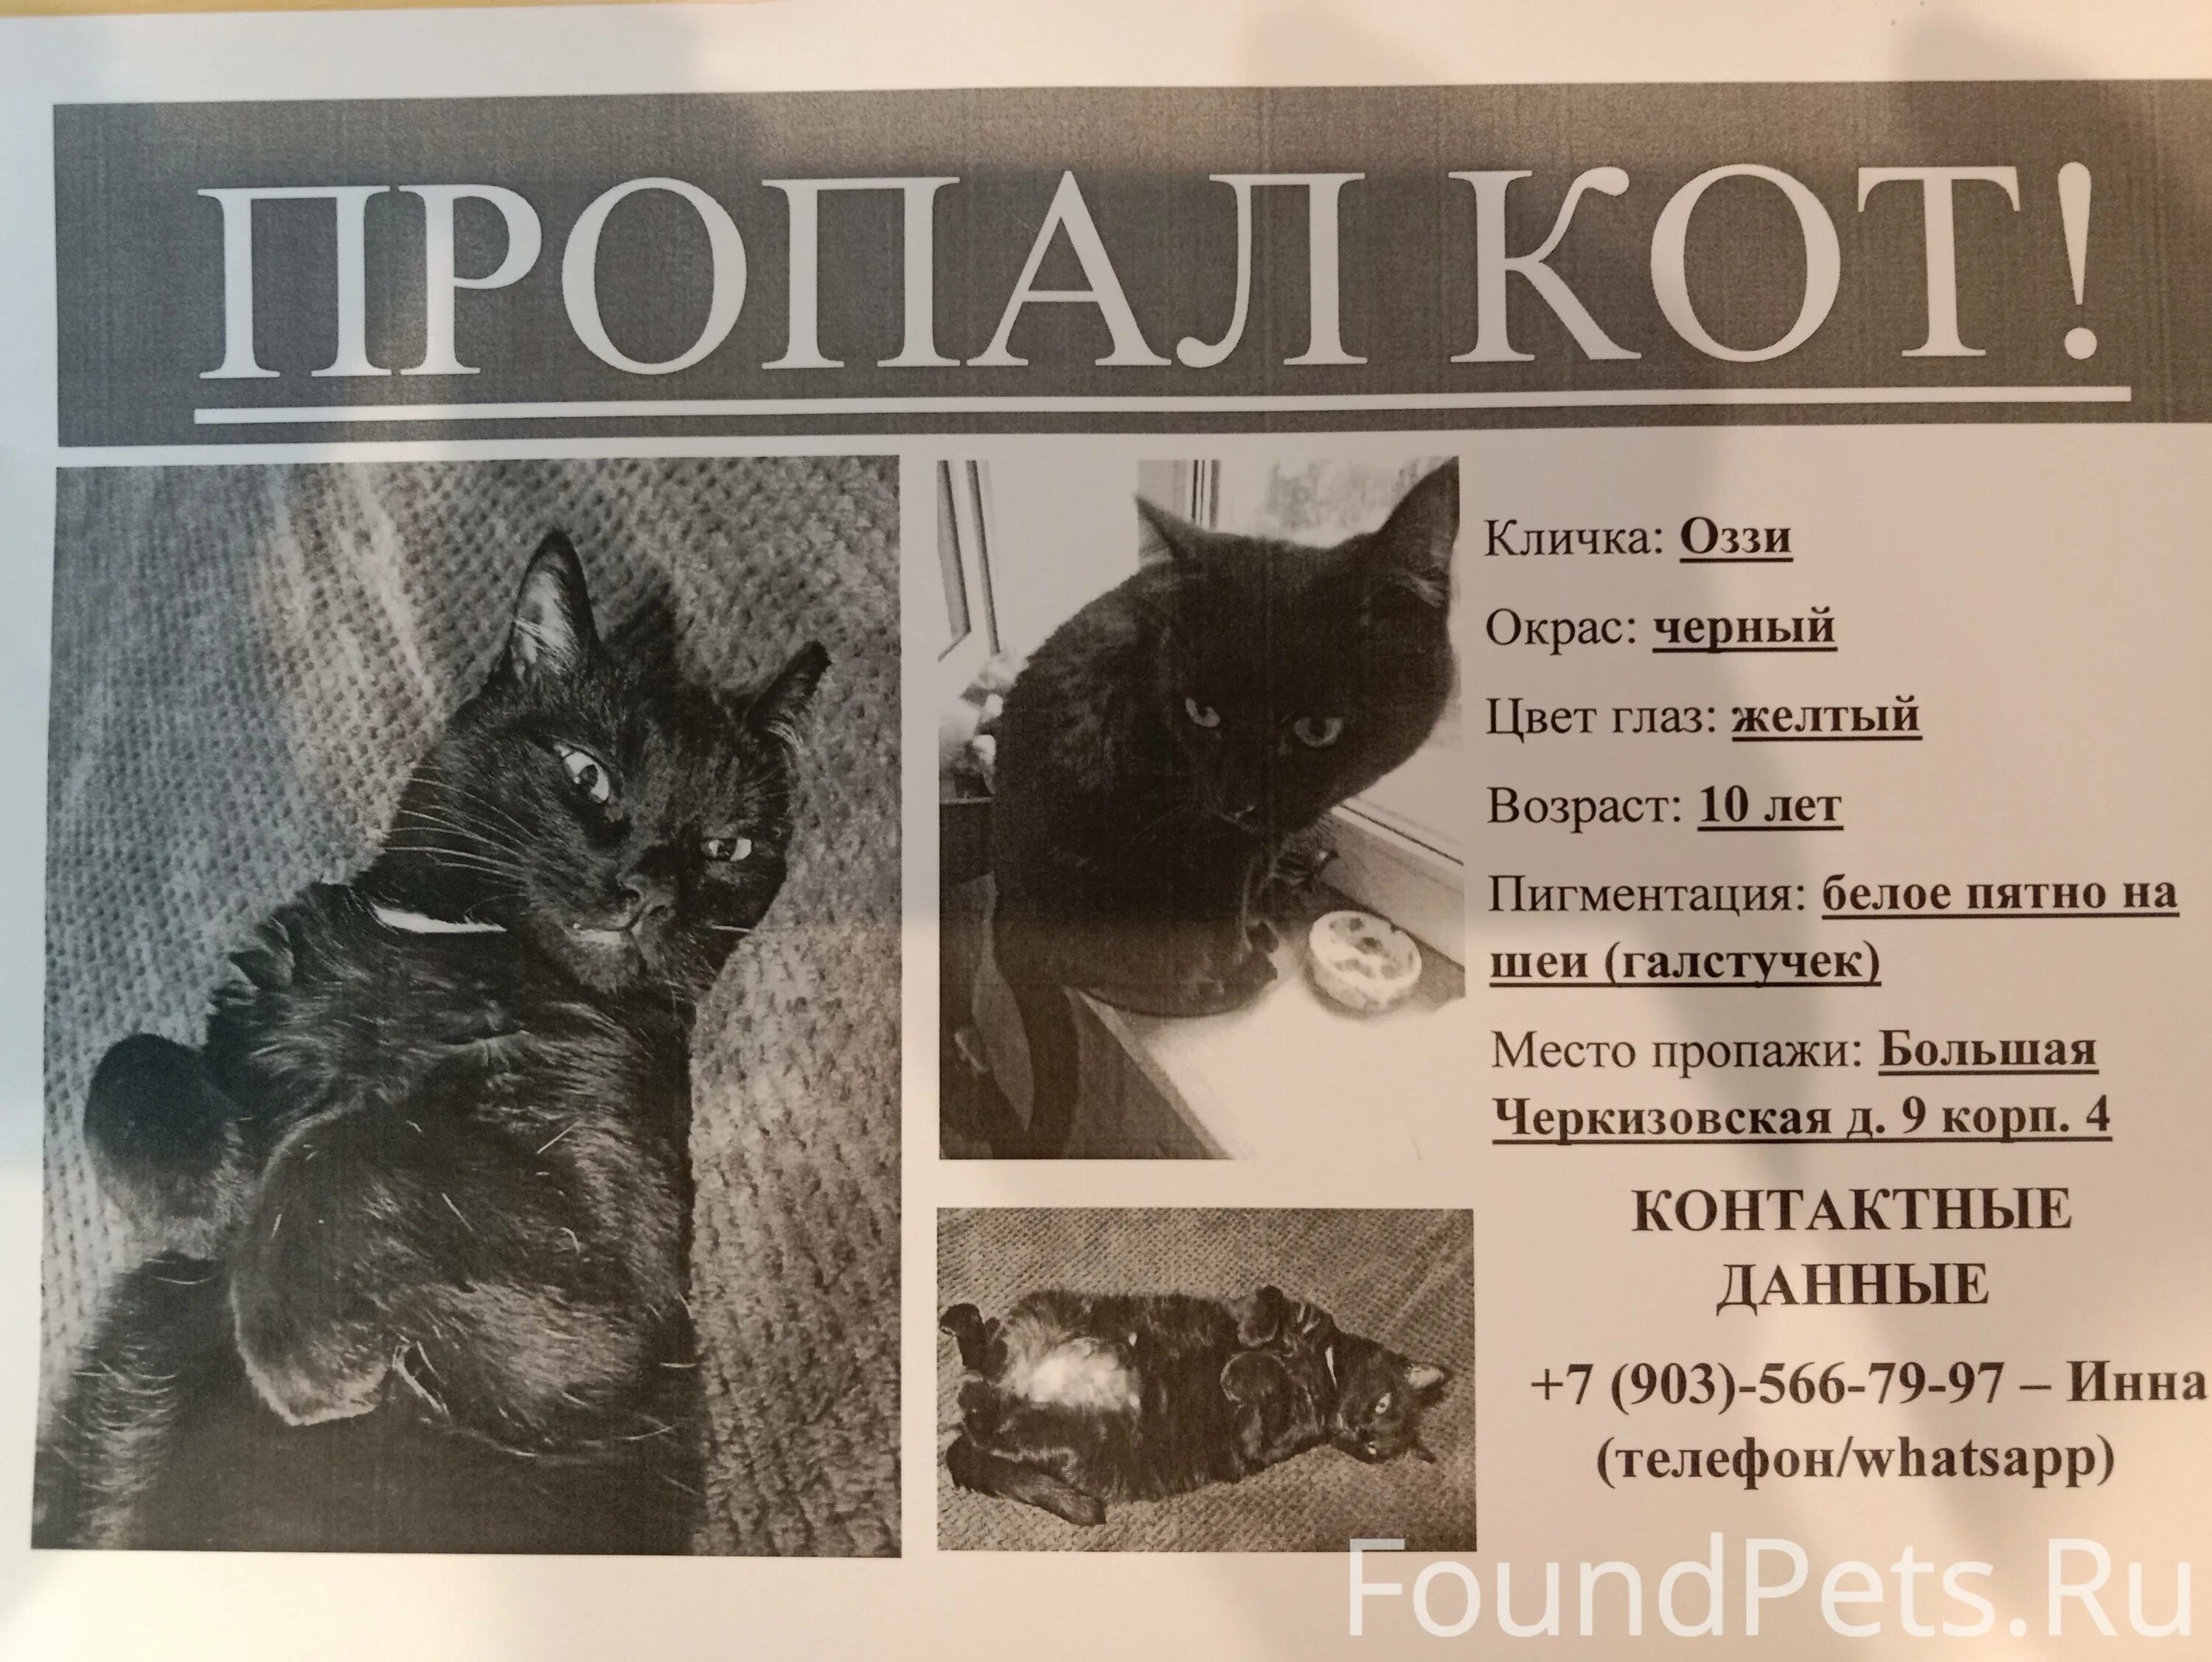 Pet 911. Пропал черный кот объявление. Пропала кошка Москва. Потерялась черная кошка Москва. Пропала кошка объявления Москва.